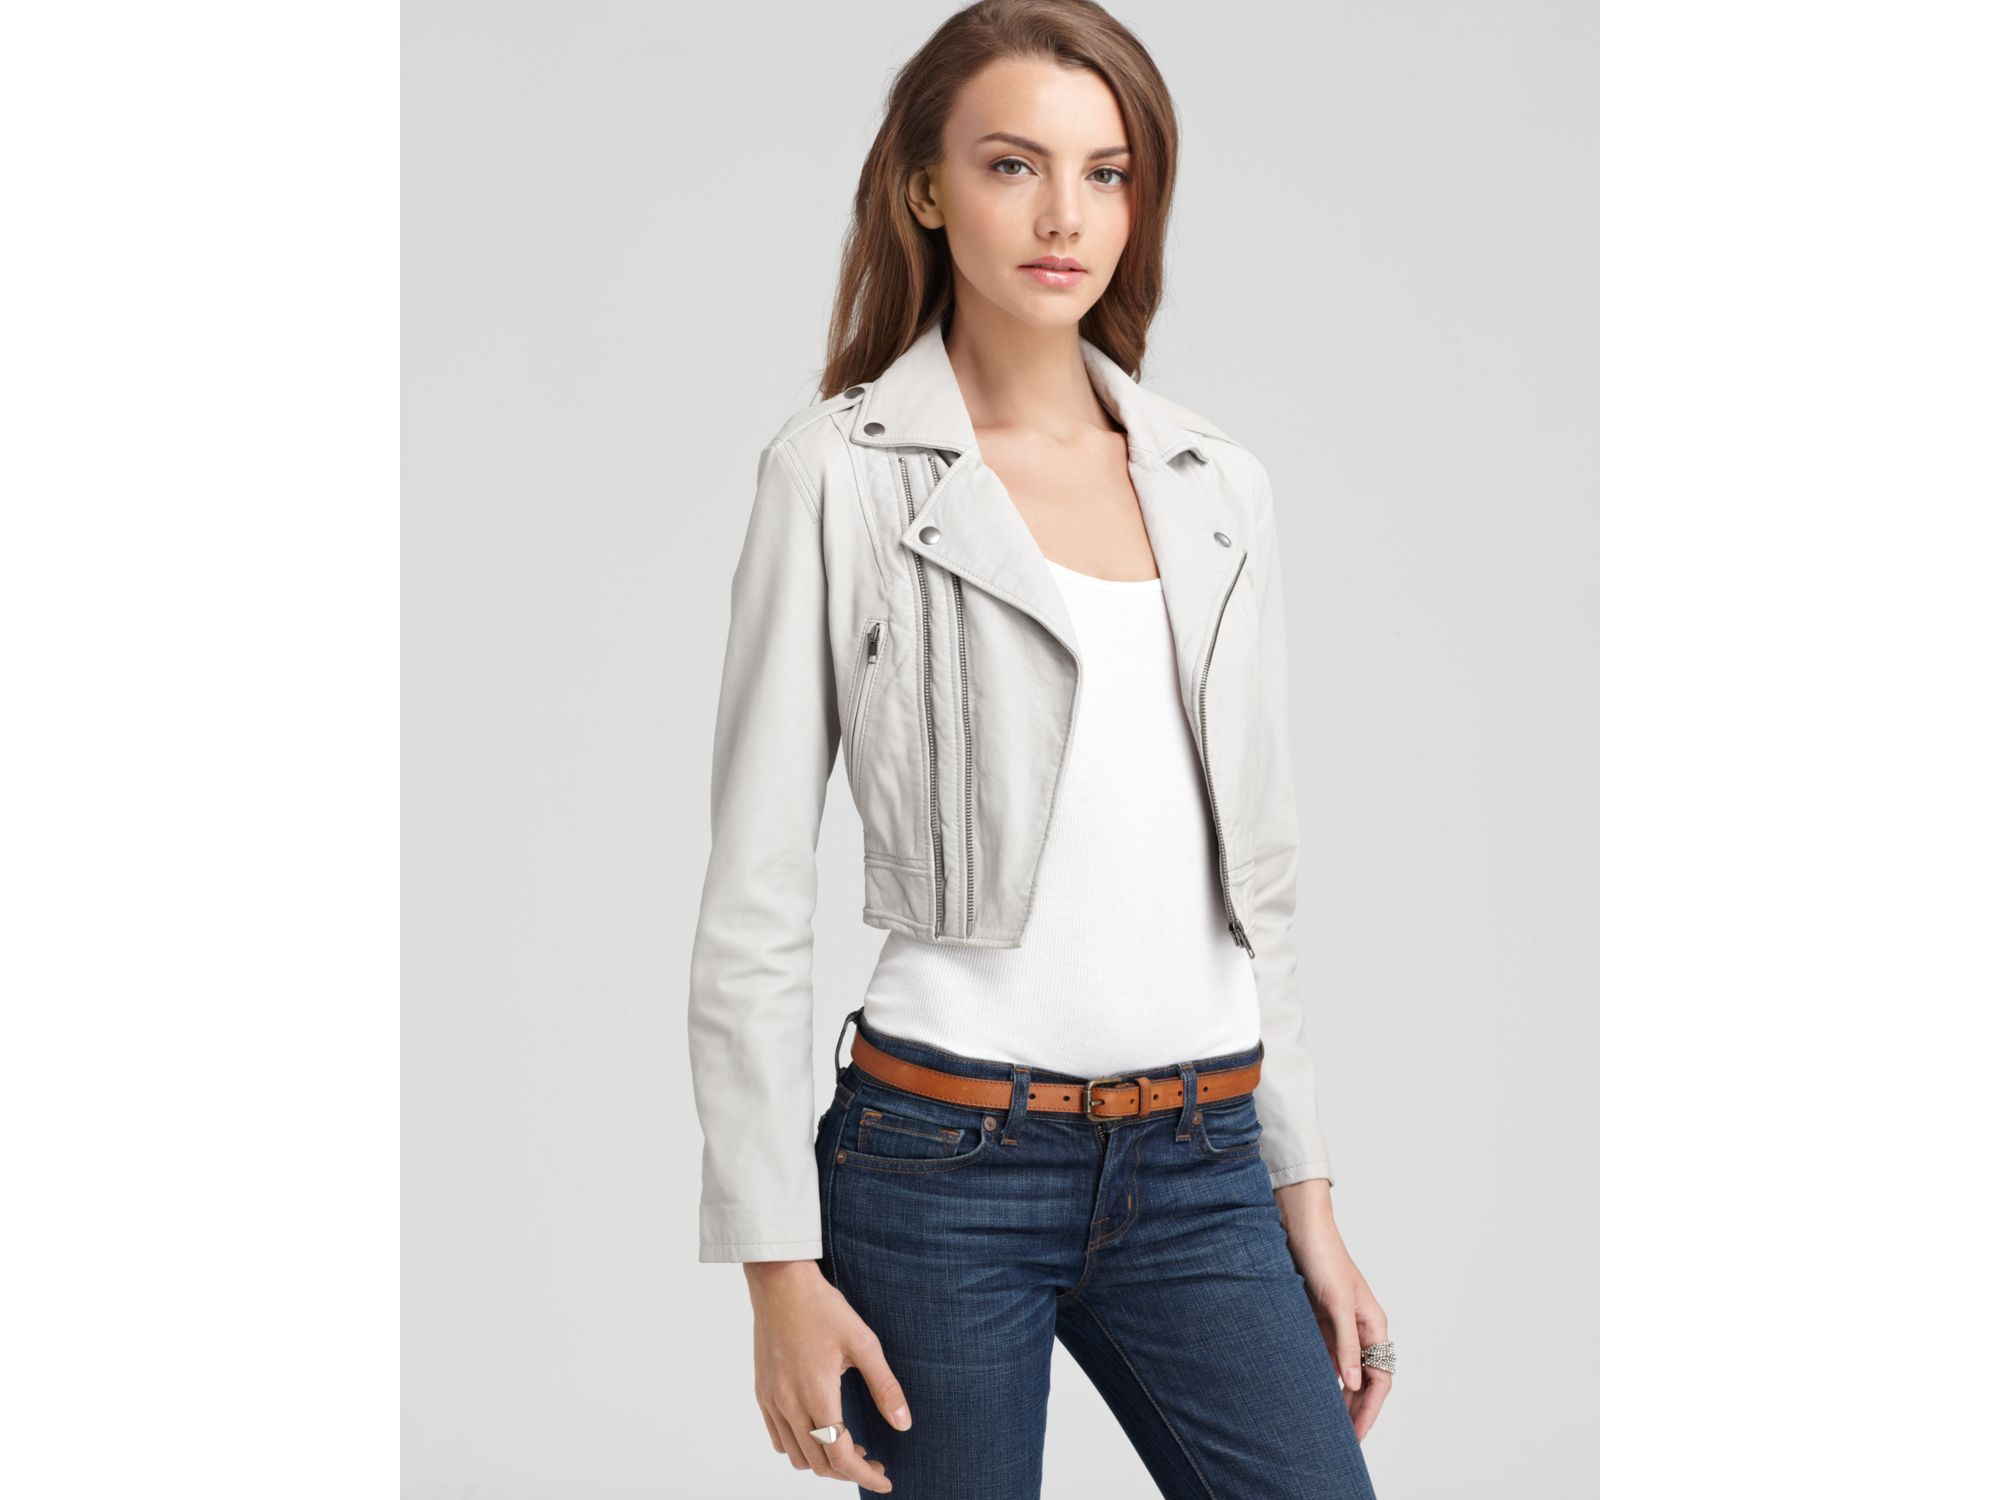 Pale grey leather jacket – Modern fashion jacket photo blog